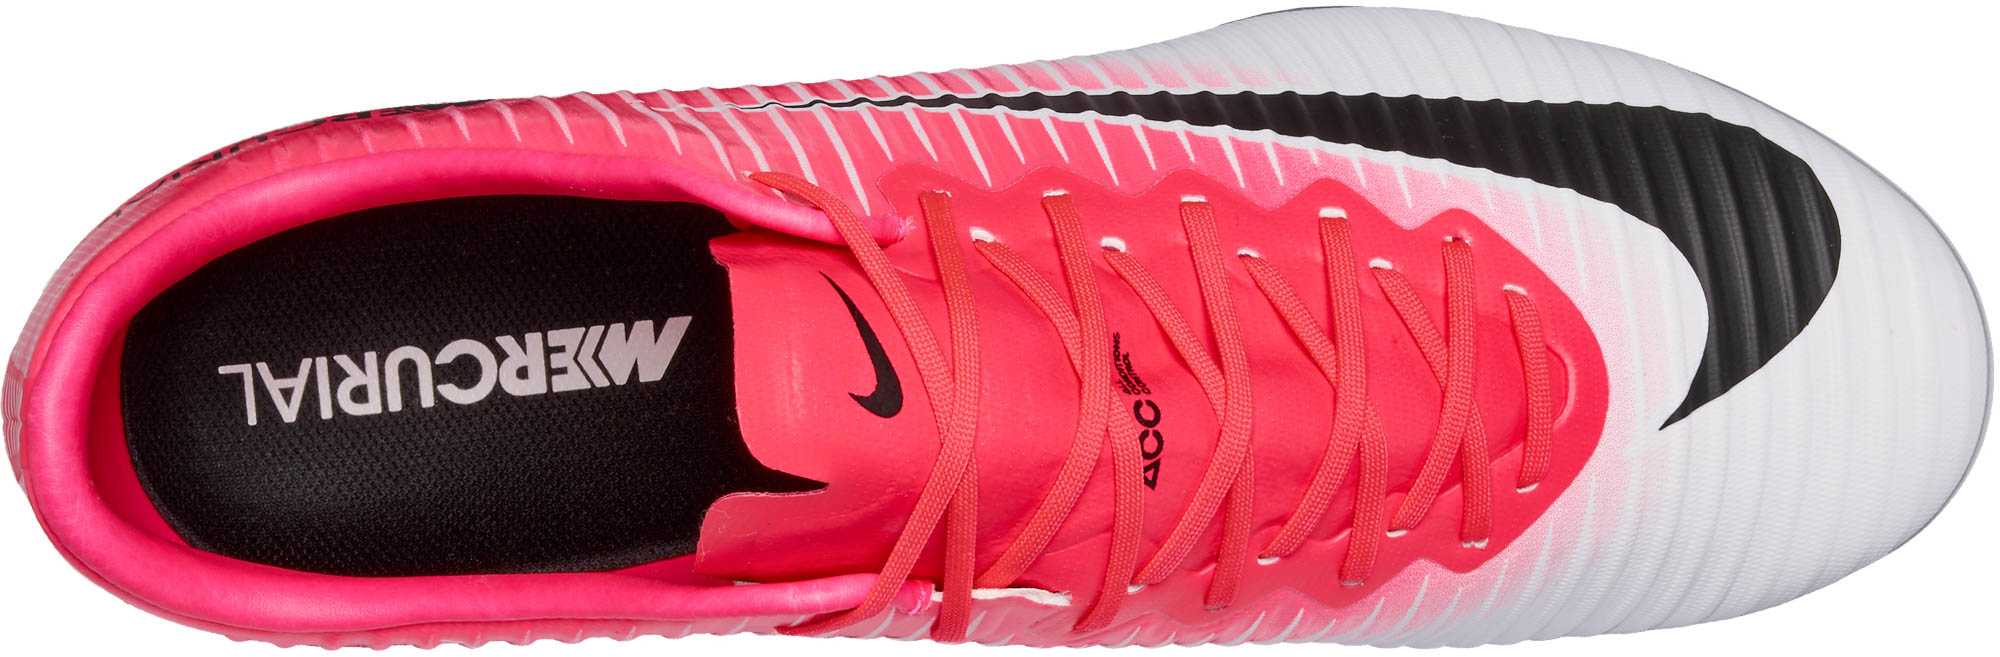 Nike Mercurial Vapor XI - Pink 